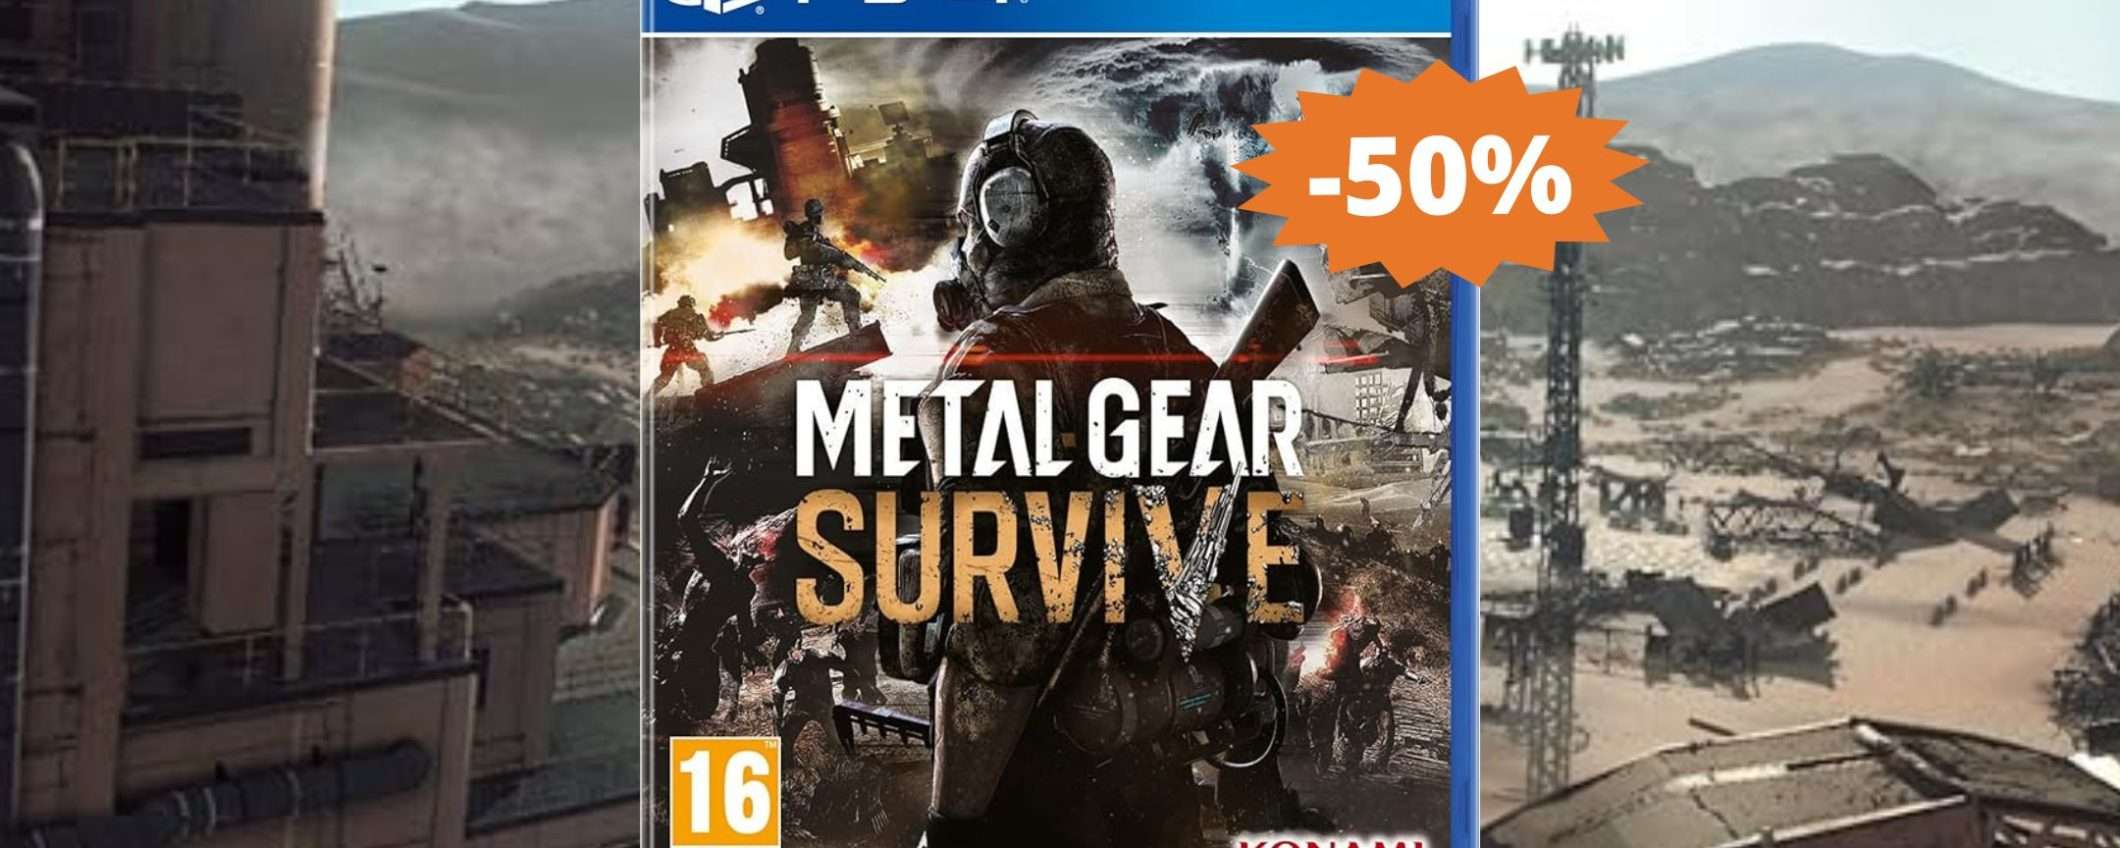 Metal Gear Survive per PS4: CROLLO del prezzo su Amazon (-50%)